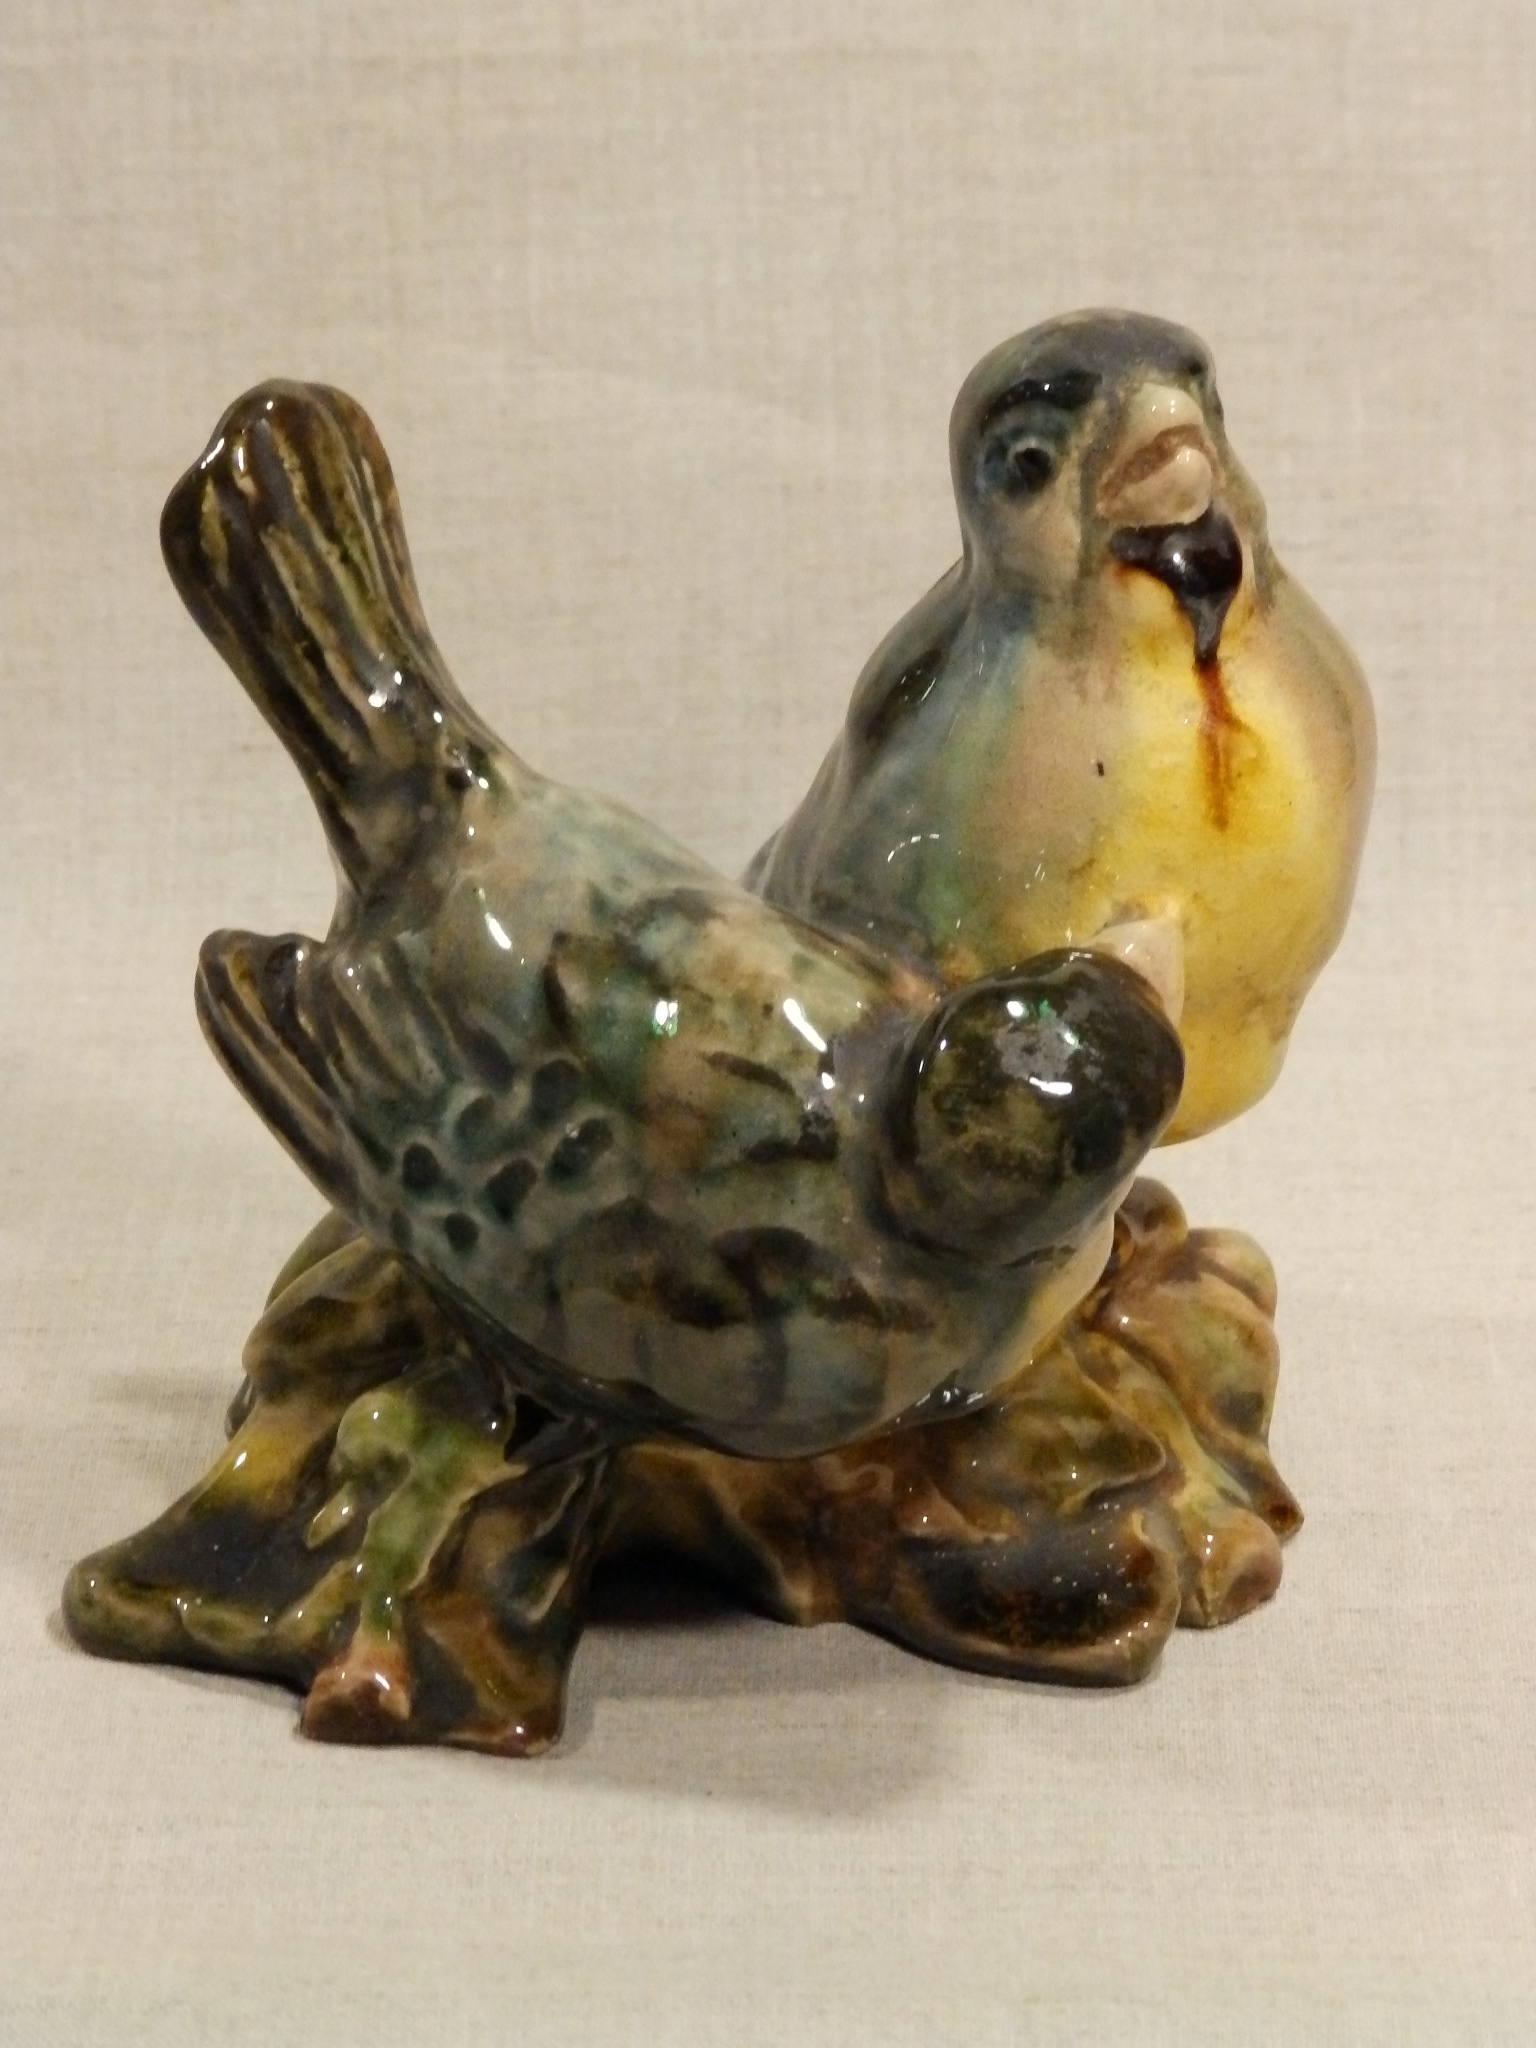 ►RRR РЕДКАЯ статуэтка ПТИЦЫ Птички «Воробьи» старая Гжель 1950-е или СХФ №1 керамика майолика СССР (31)